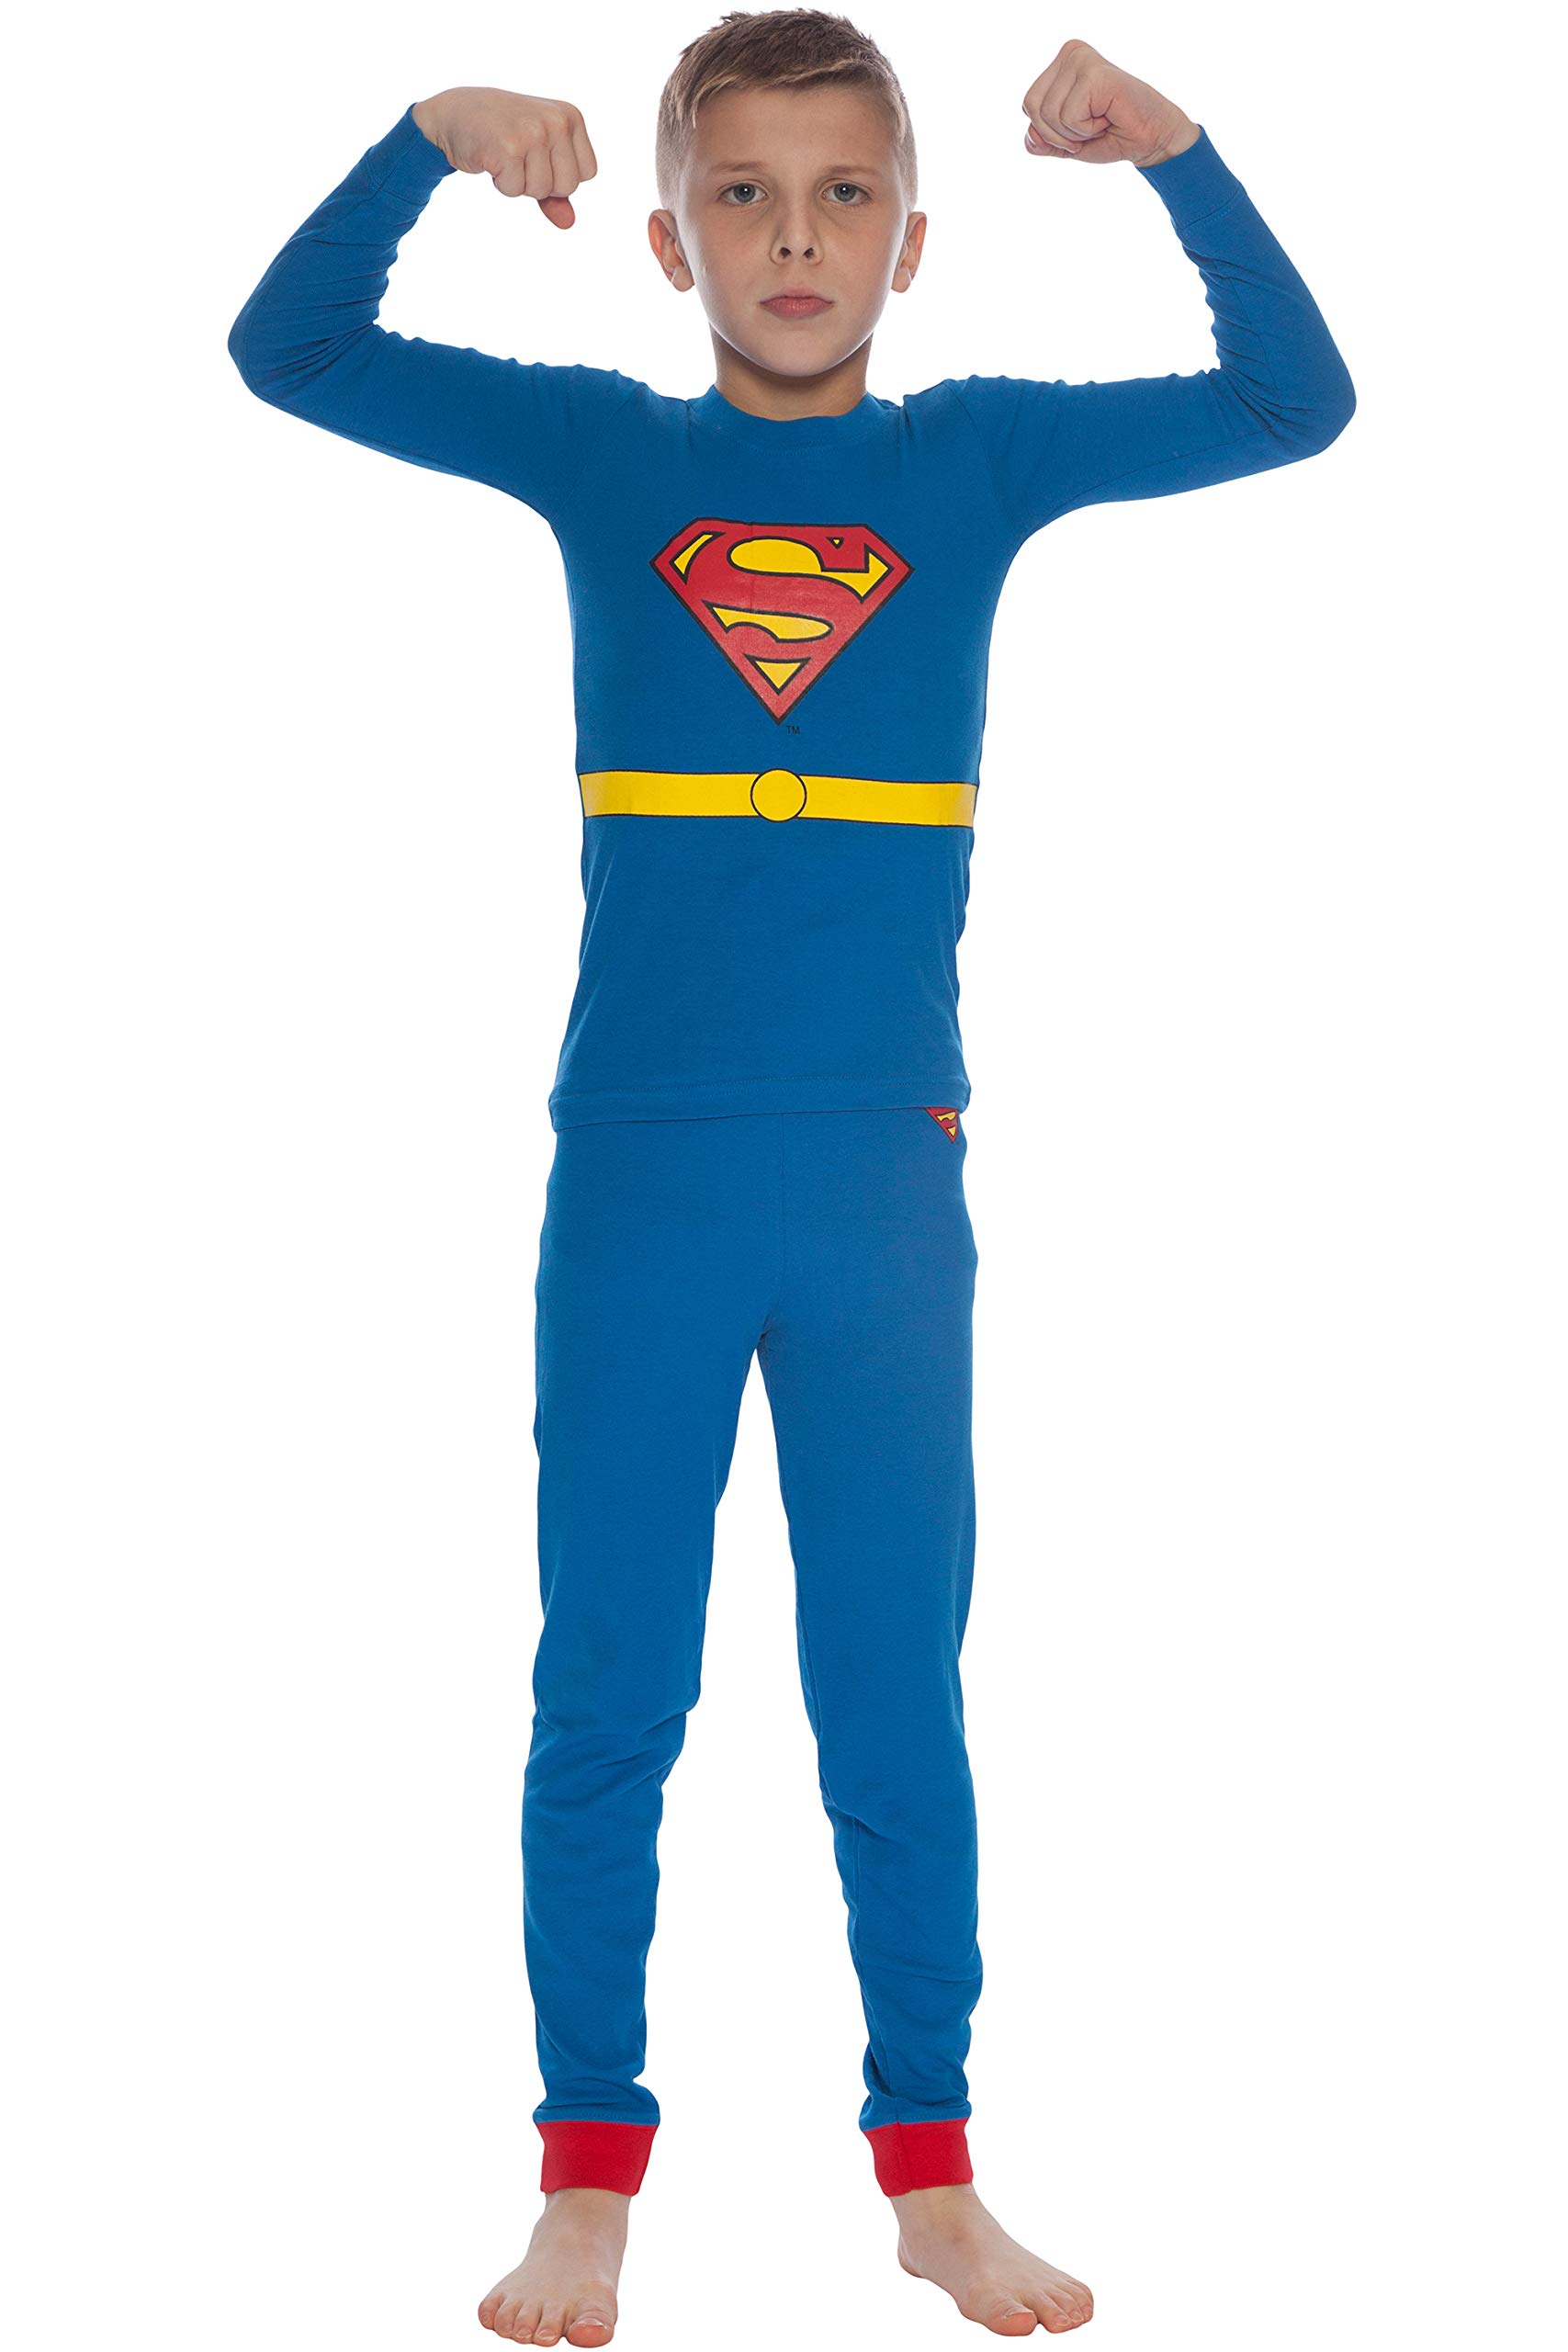 DC Comics boys Superman Costume Pajama Set